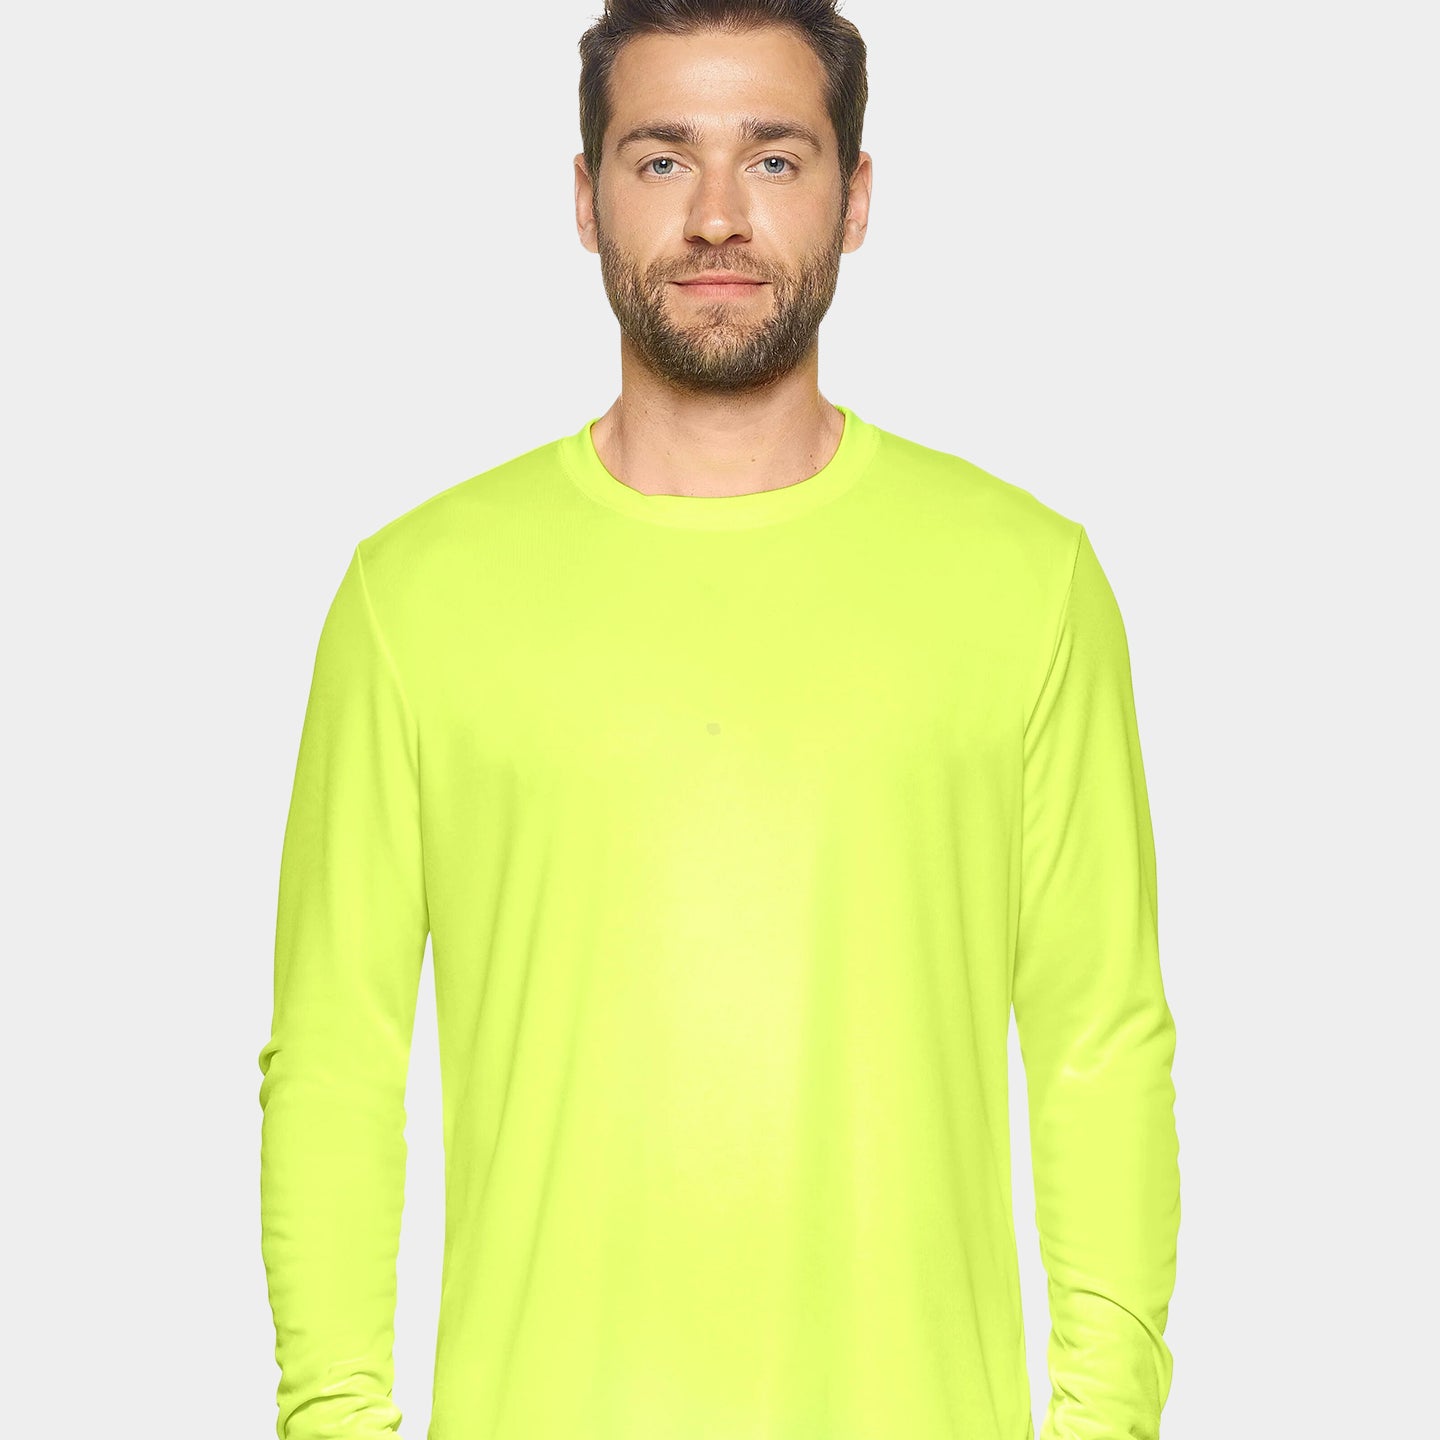 Expert Brand DriMax Men's Performance Long Sleeve Shirt, 2XL, Safety Yellow A1